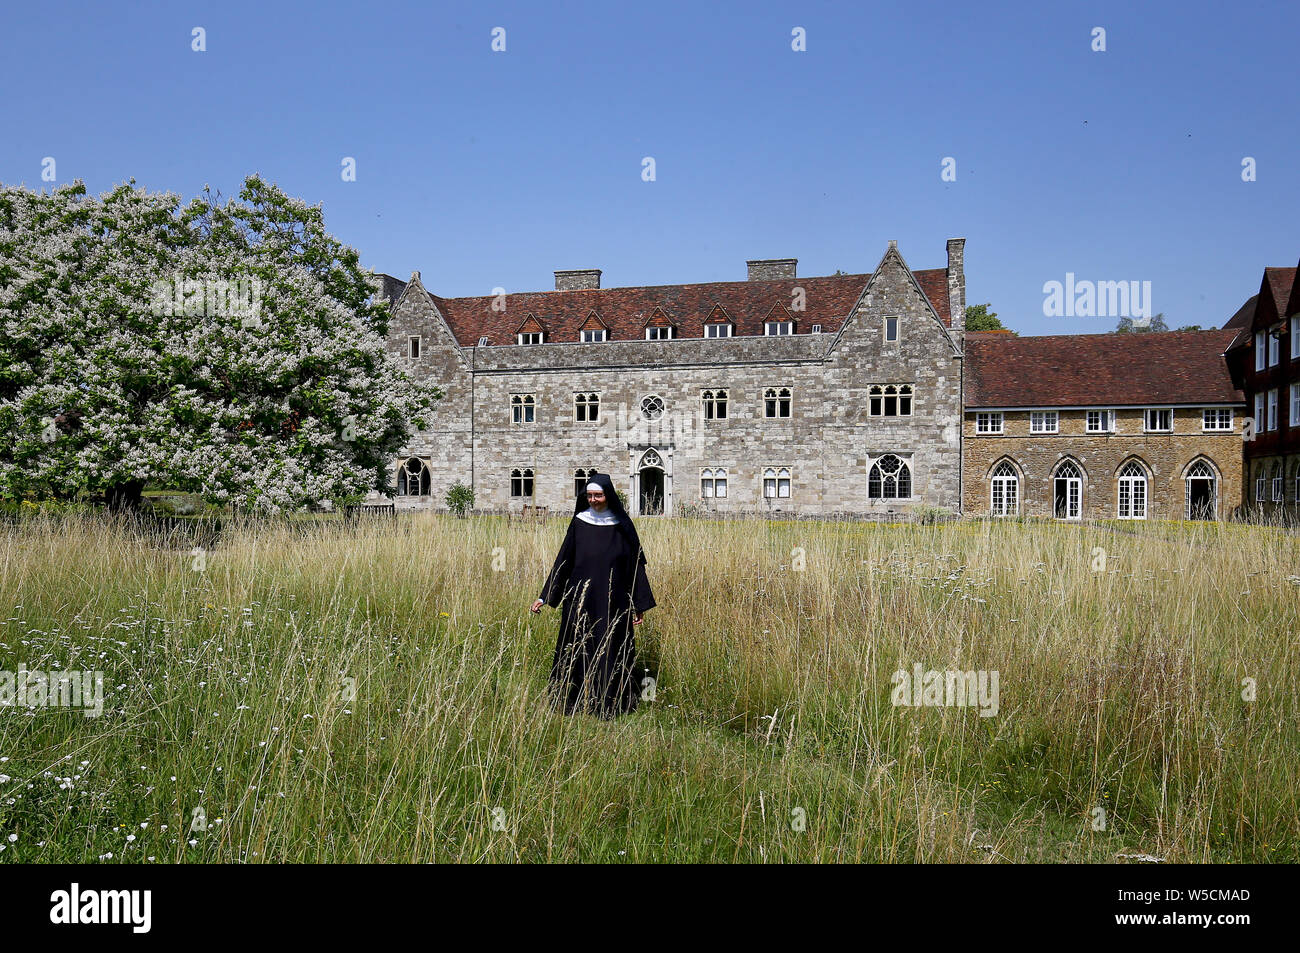 Mère Mary David apprécie le jardin sauvage de l'abbaye de St. Mary, également connue sous le nom d'abbaye de Malling, à West Malling, dans le Kent. Selon les militants, le mode de vie de la communauté des moniales est menacé par les propositions de construction d'un logement à côté de leur ancienne maison isolée. Banque D'Images